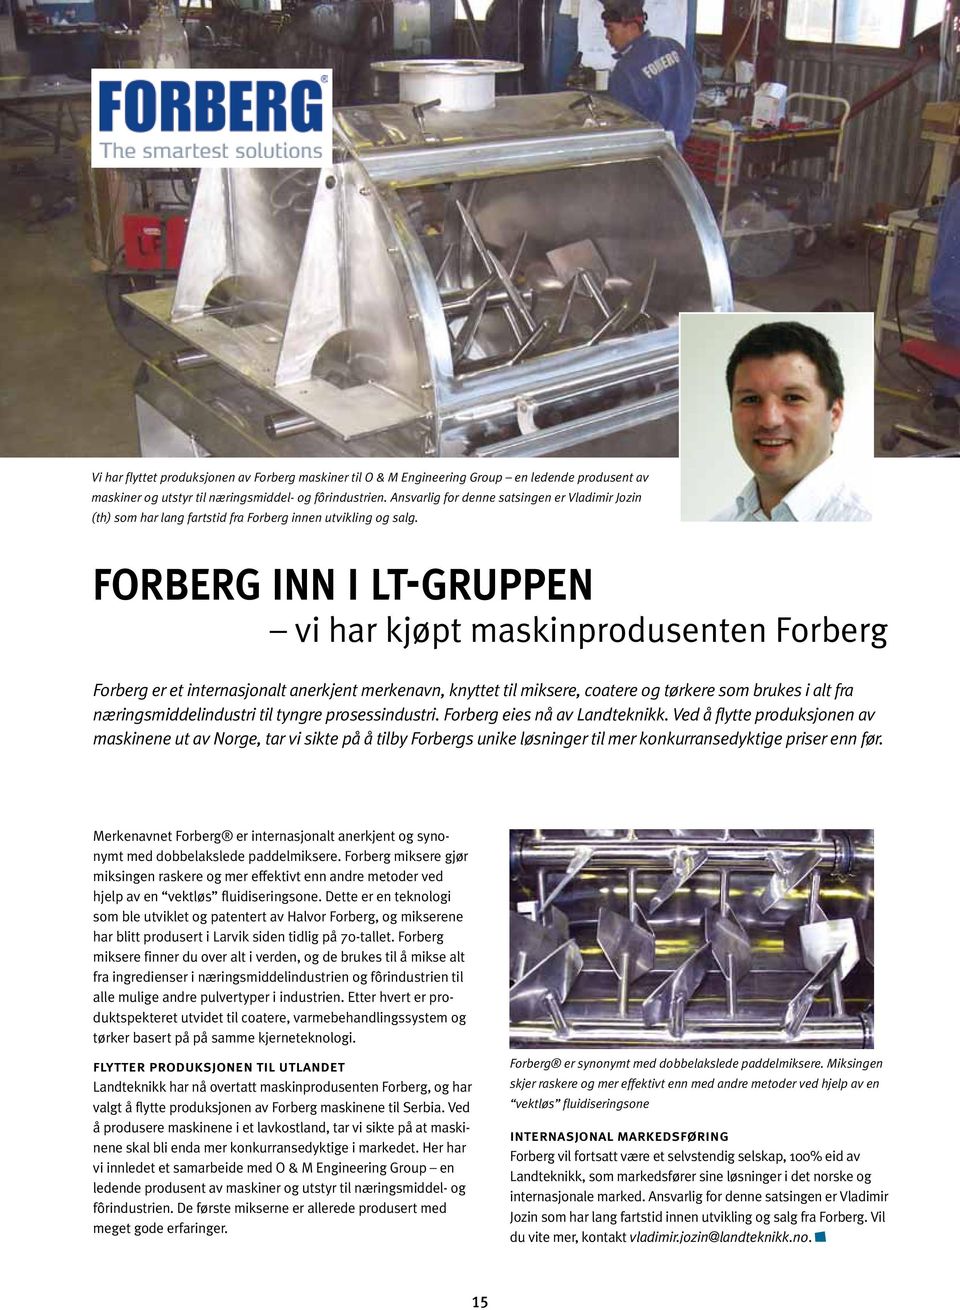 forberg inn i lt-gruppen vi har kjøpt maskinprodusenten Forberg Forberg er et internasjonalt anerkjent merkenavn, knyttet til miksere, coatere og tørkere som brukes i alt fra næringsmiddelindustri